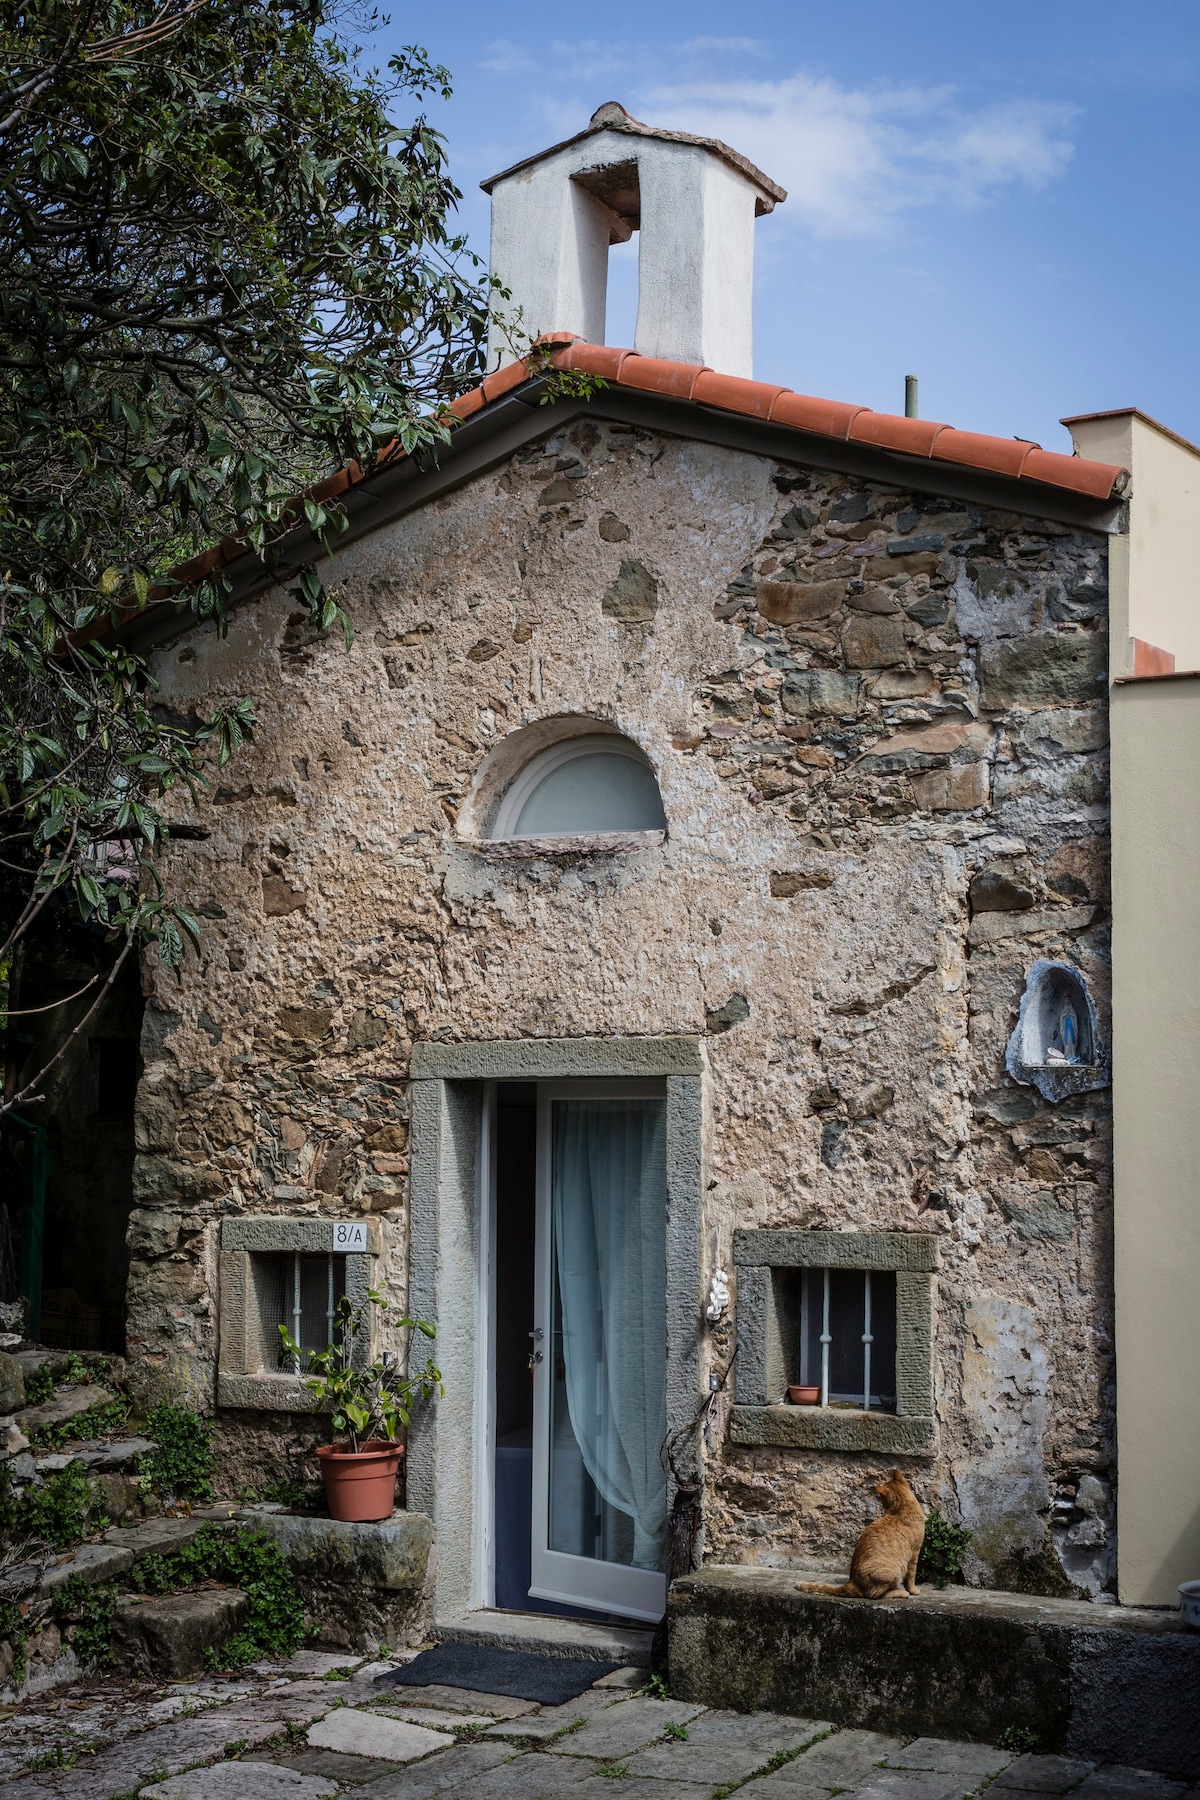 The Little Church in Campiglia, Cinqueterre